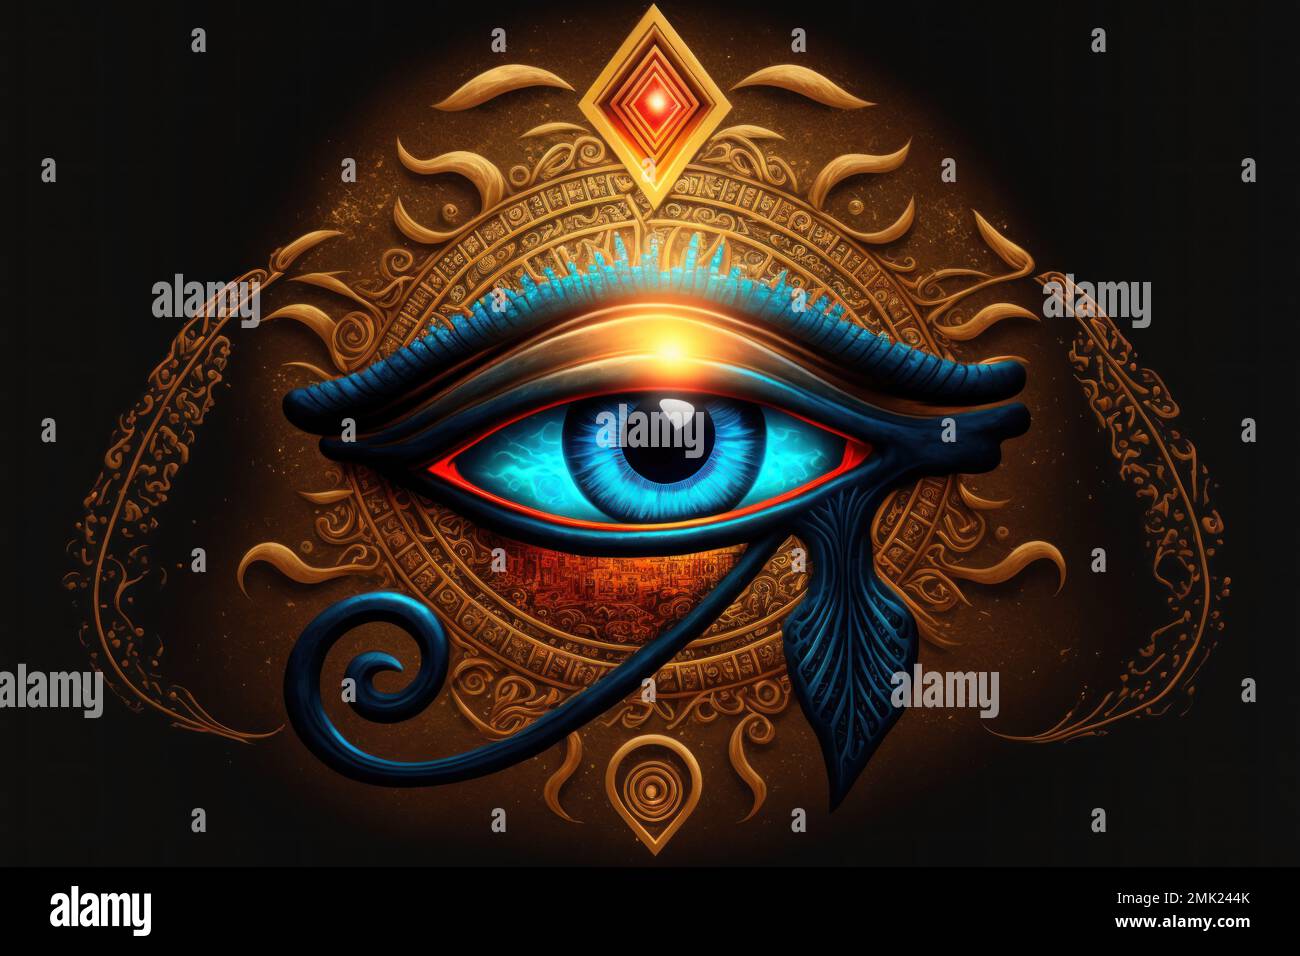 Magical eye of Horus Stock Photo - Alamy